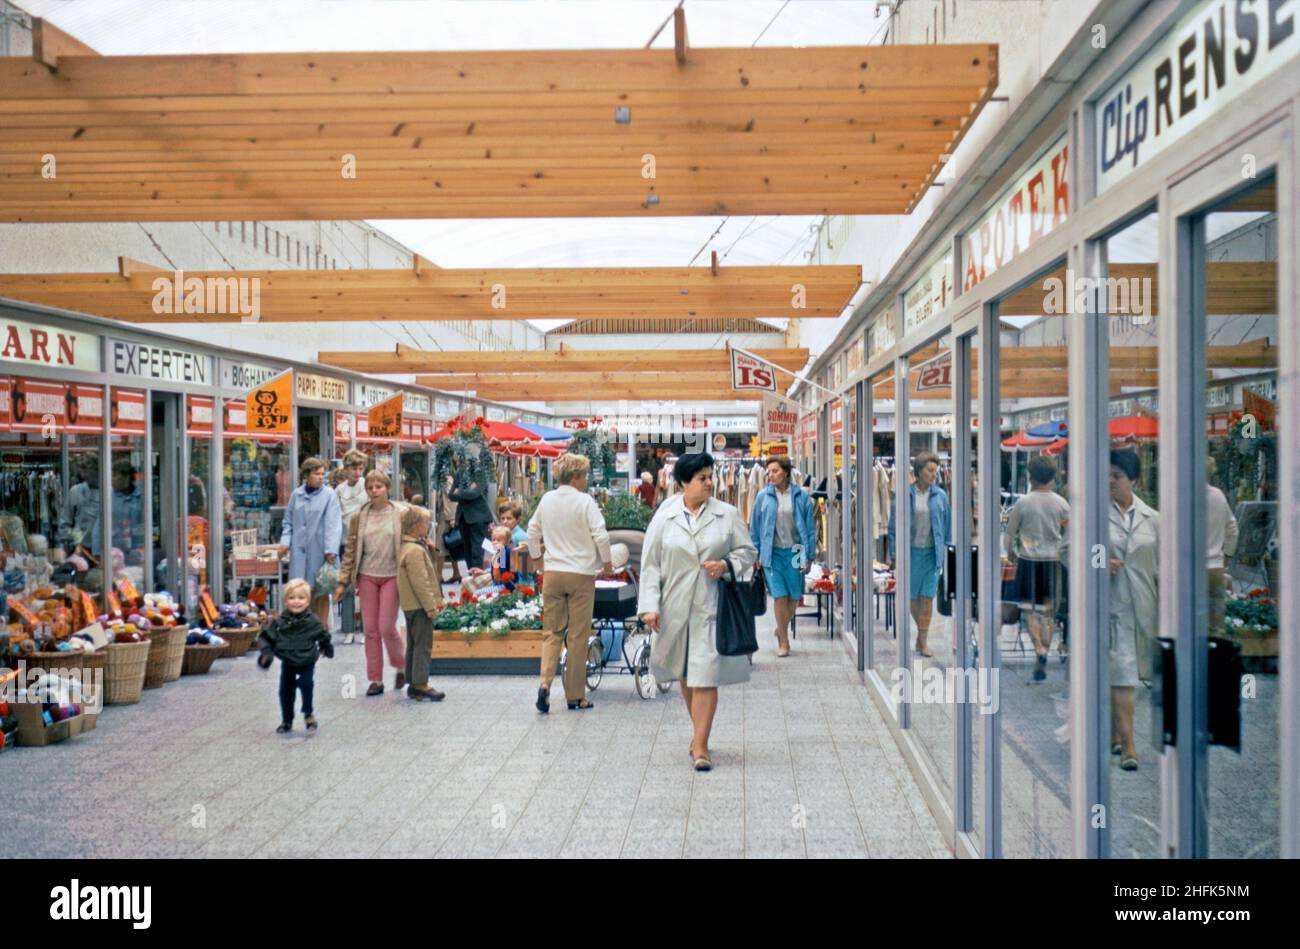 Compras encubiertas en el Tarup Center en las afueras de Odense, Funen, Dinamarca, en 1970. Las señales rojas y blancas indican que es tiempo de venta de verano (sommer udsalg). El uso de madera en el diseño del centro es evidente. El centro abrió en 1968 con 21 tiendas y fue el primer centro comercial cubierto en Funen. Ahora se ha ampliado mucho con más del doble del número de tiendas en el sitio y ha sido ampliamente remodelado. Odense es la ciudad principal de la isla de Funen. Esta imagen proviene de una transparencia de color amateur de 35mm – una fotografía vintage de 1970s. Foto de stock